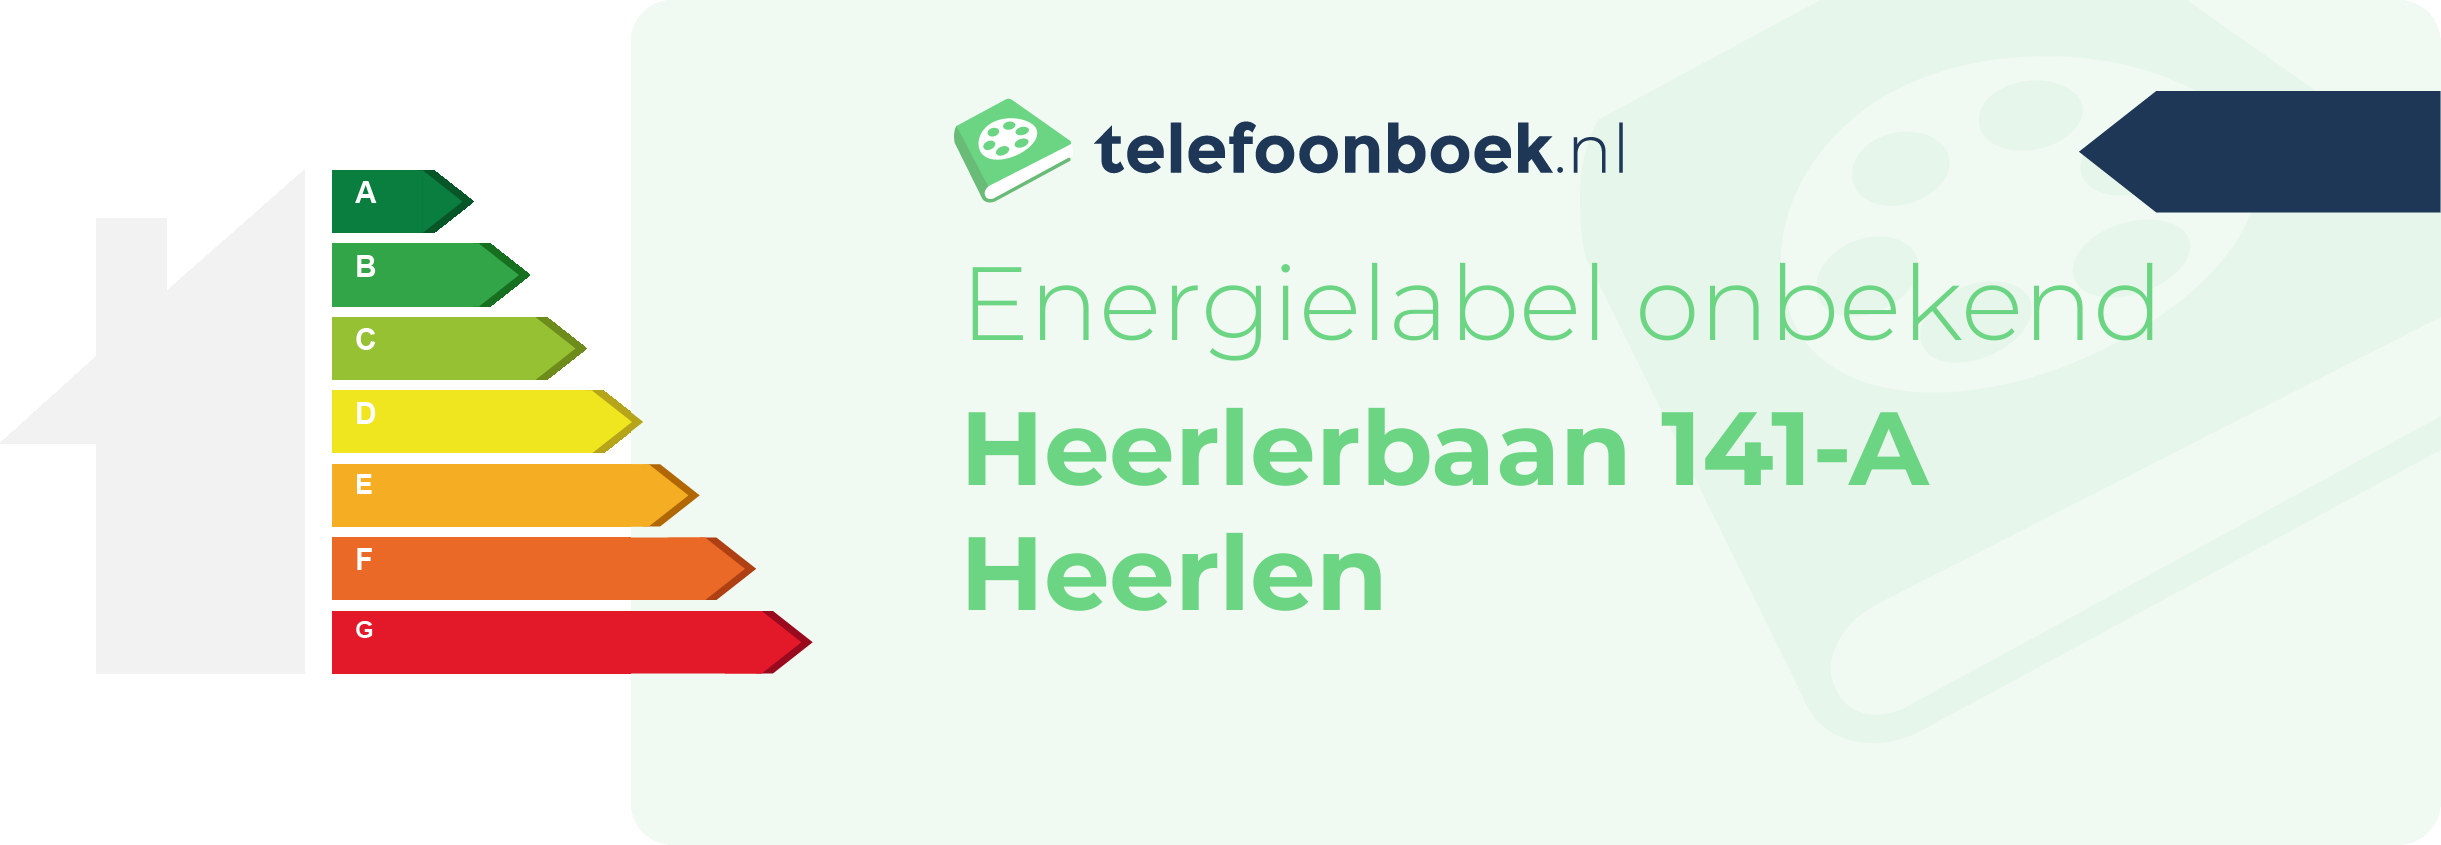 Energielabel Heerlerbaan 141-A Heerlen